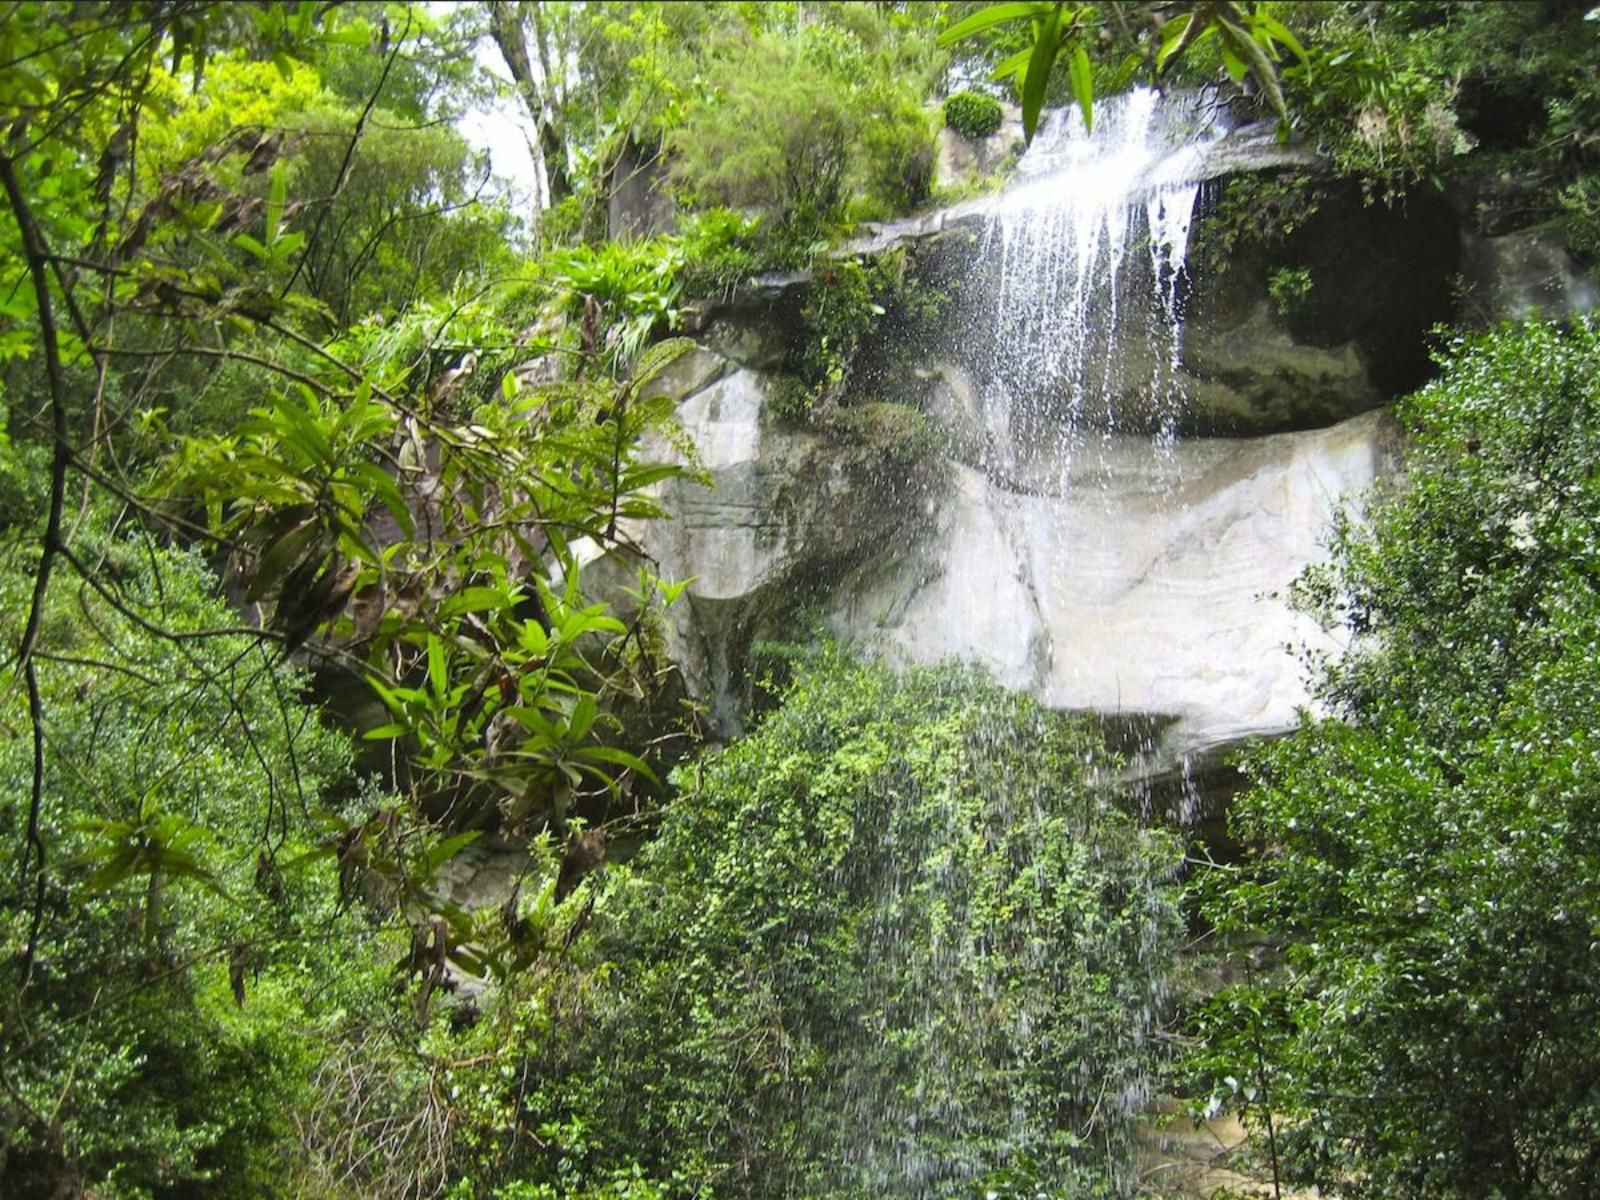 Ikhayalamafu Mountain Reserve Champagne Valley Kwazulu Natal South Africa Forest, Nature, Plant, Tree, Wood, Waterfall, Waters